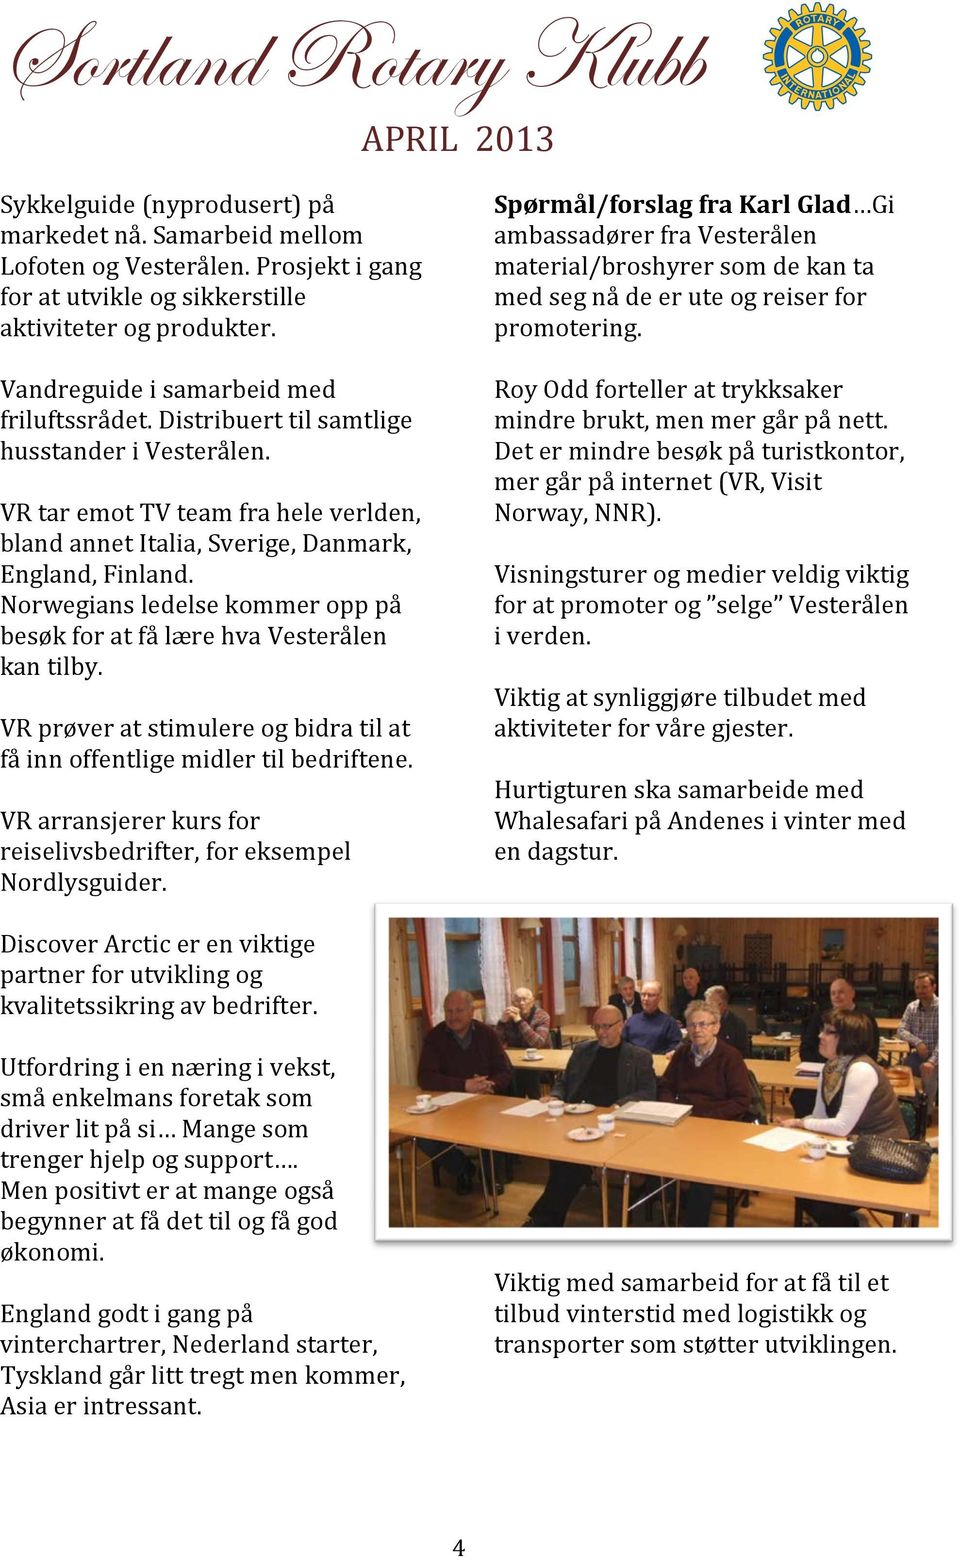 Norwegians ledelse kommer opp på besøk for at få lære hva Vesterålen kan tilby. VR prøver at stimulere og bidra til at få inn offentlige midler til bedriftene.